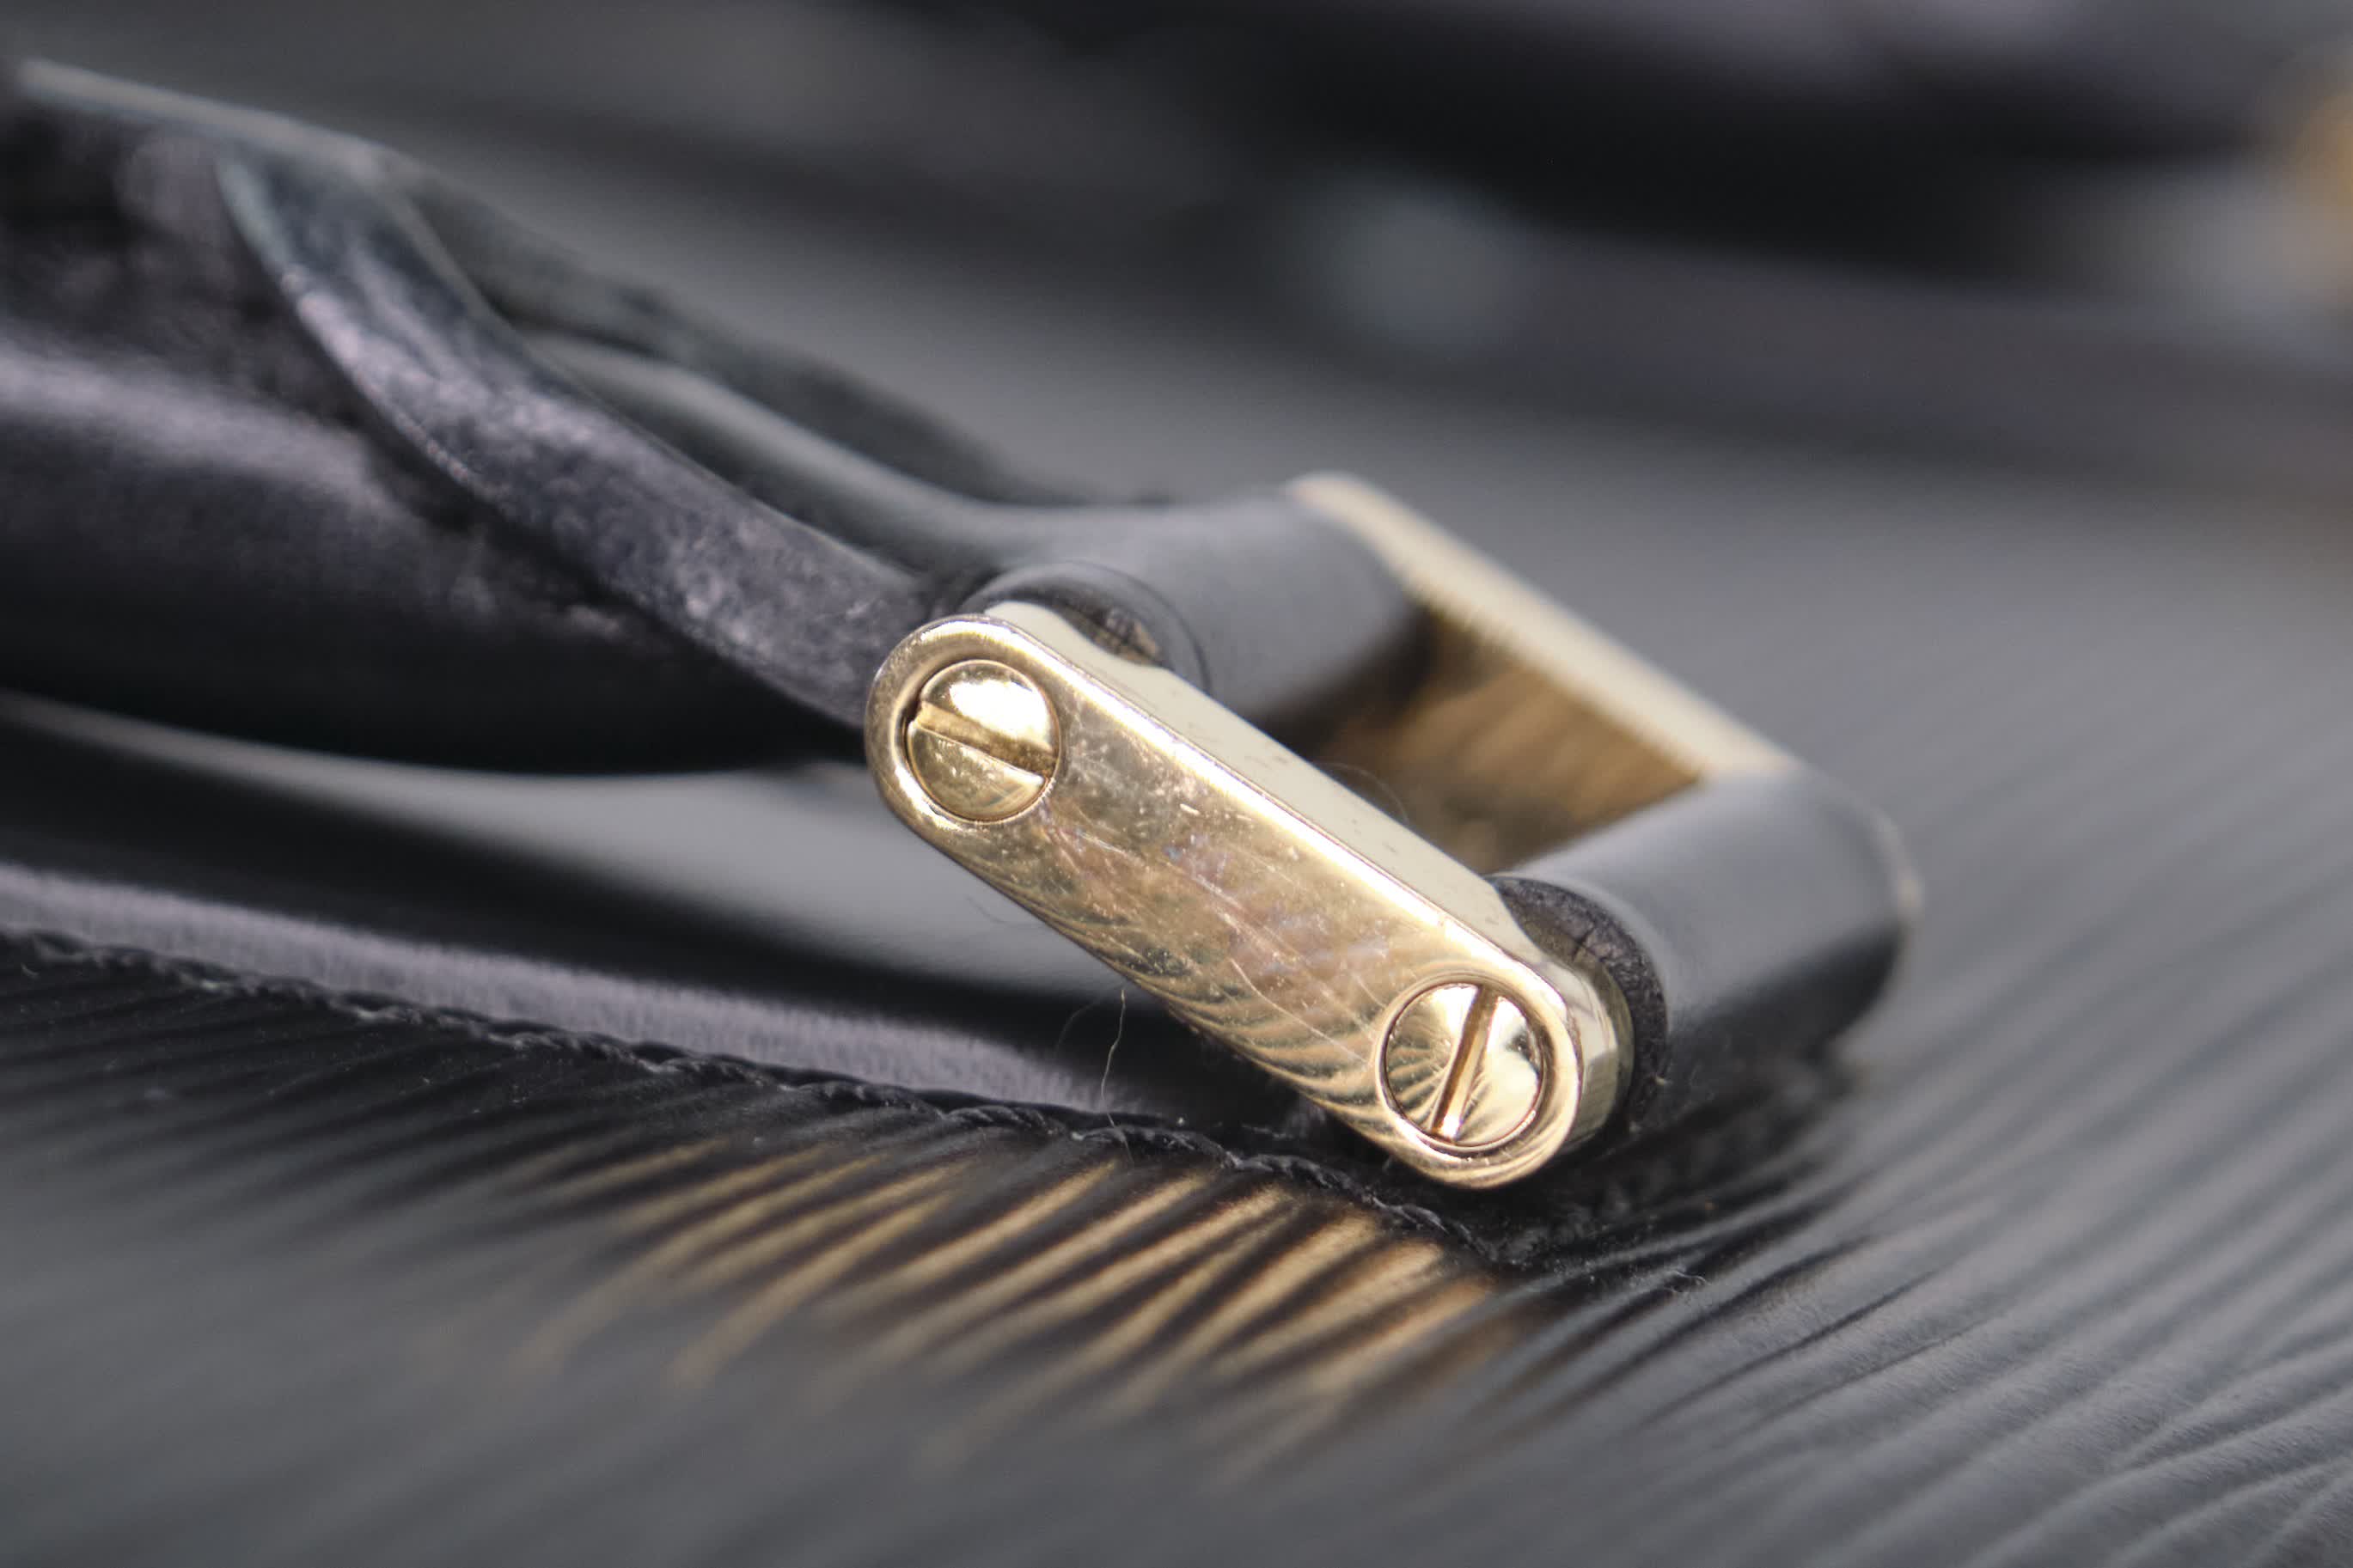 vuitton leather zipper puller